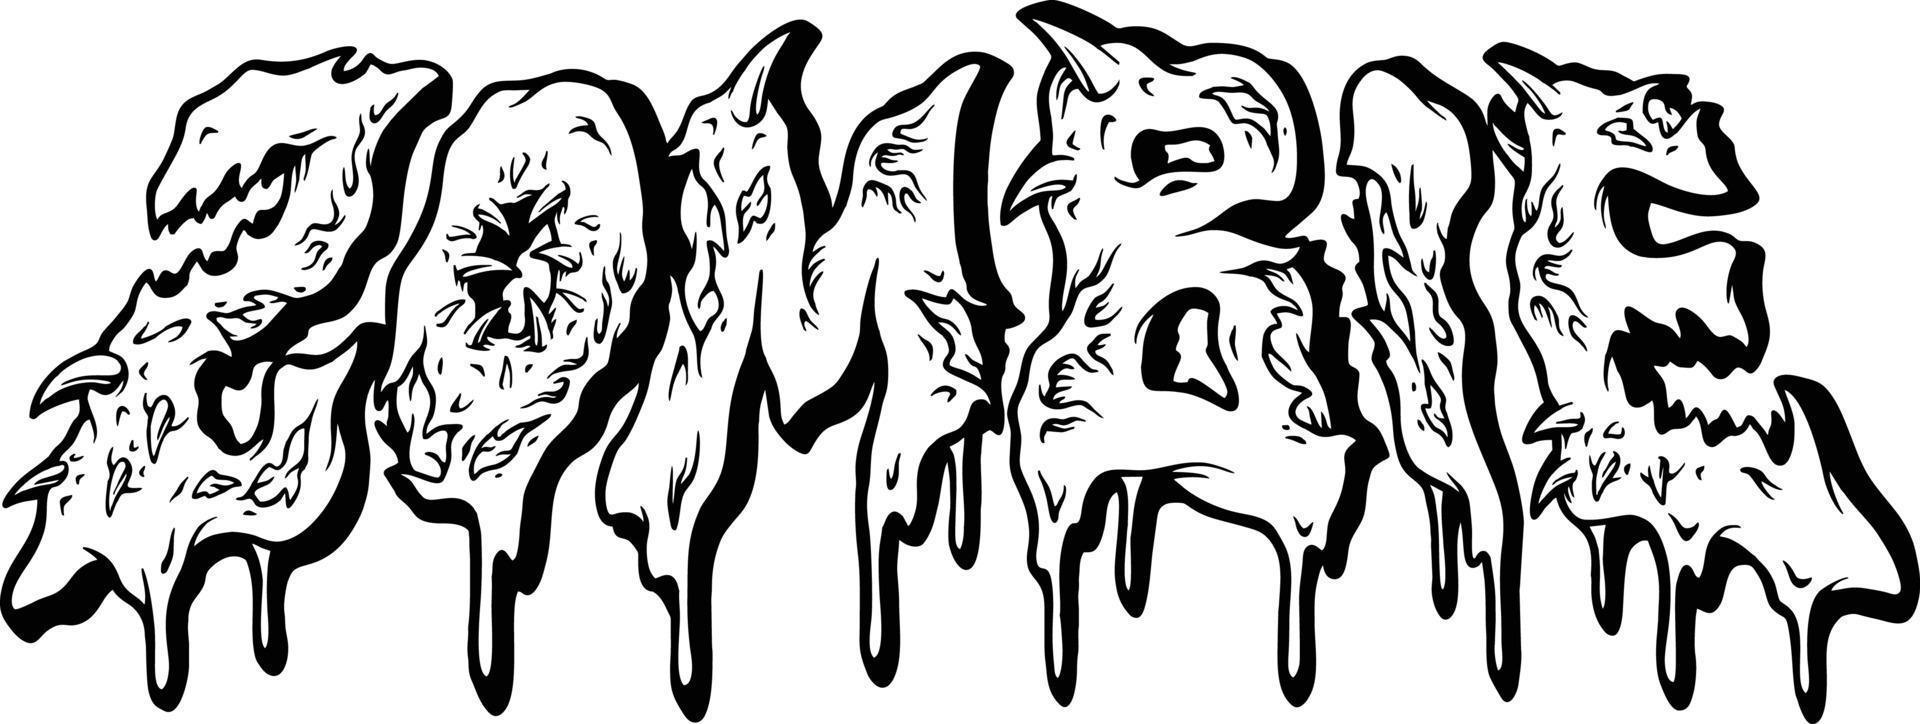 zombie font fusione testo mano lettering parole illustrazioni vettore